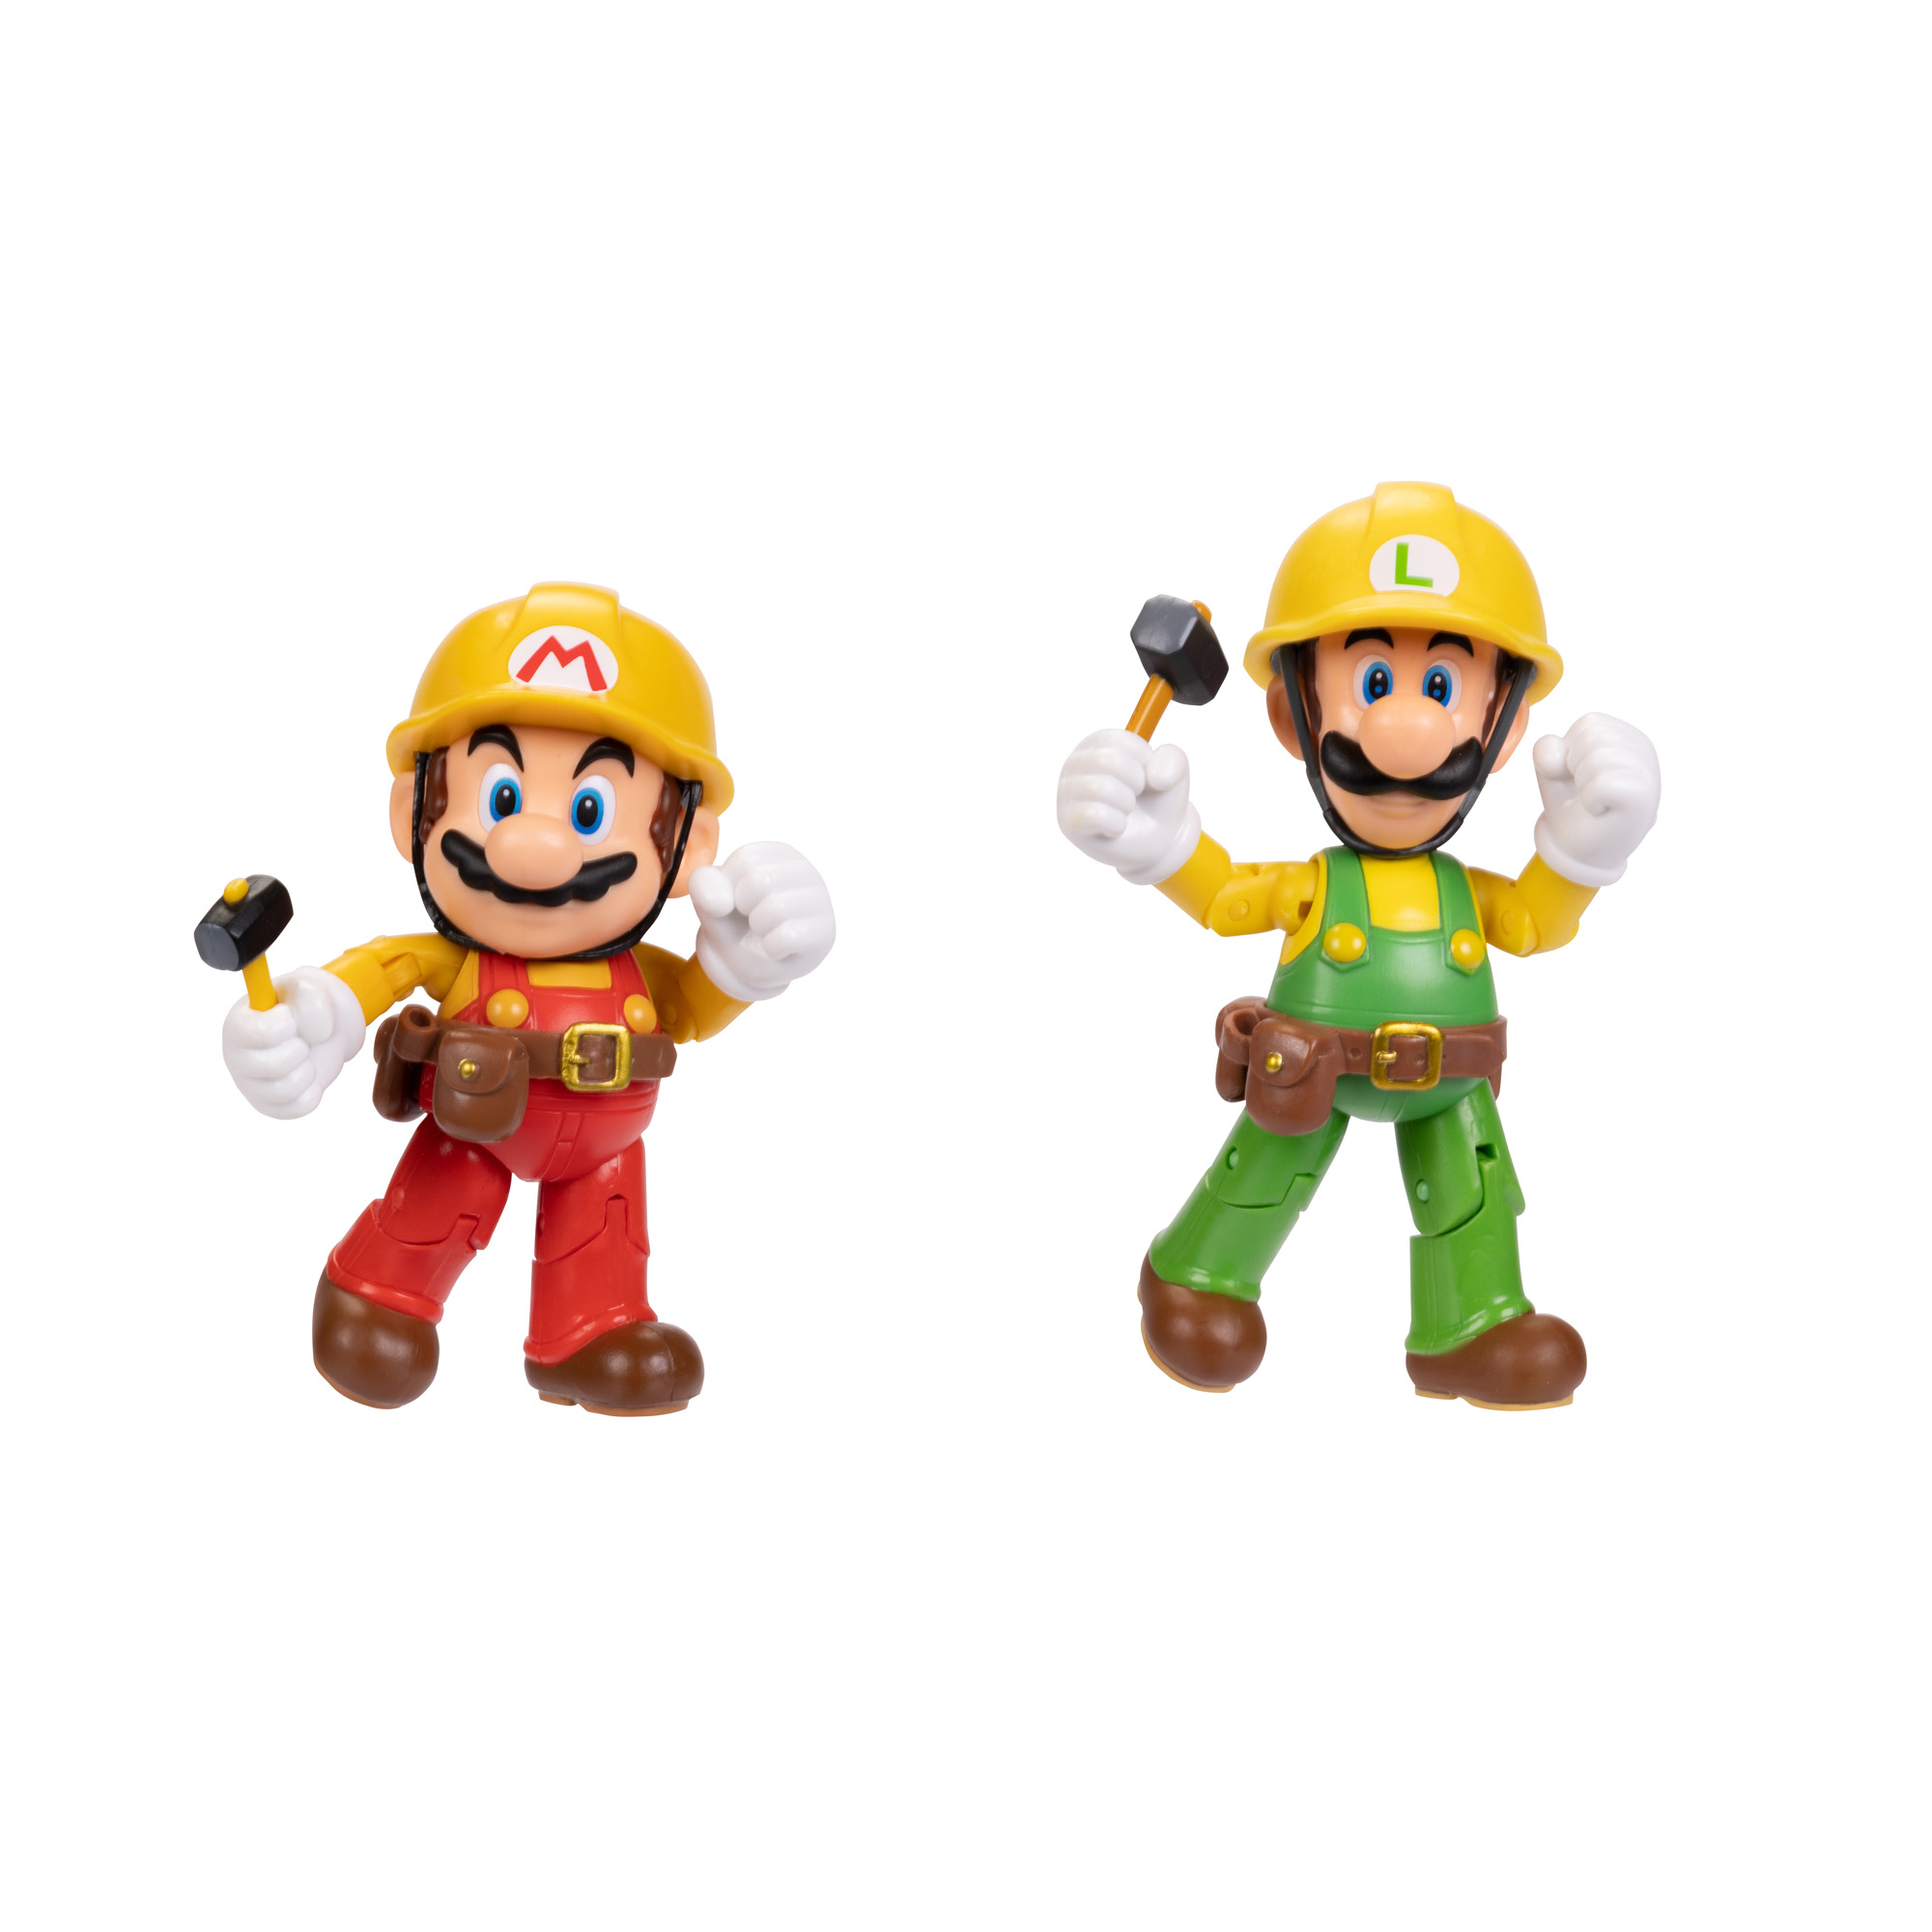 SUPER MARIO Nintendo Super Luigi Maker, Spielware & Mario Figuren 2er-Pack: Maker Mario 10cm